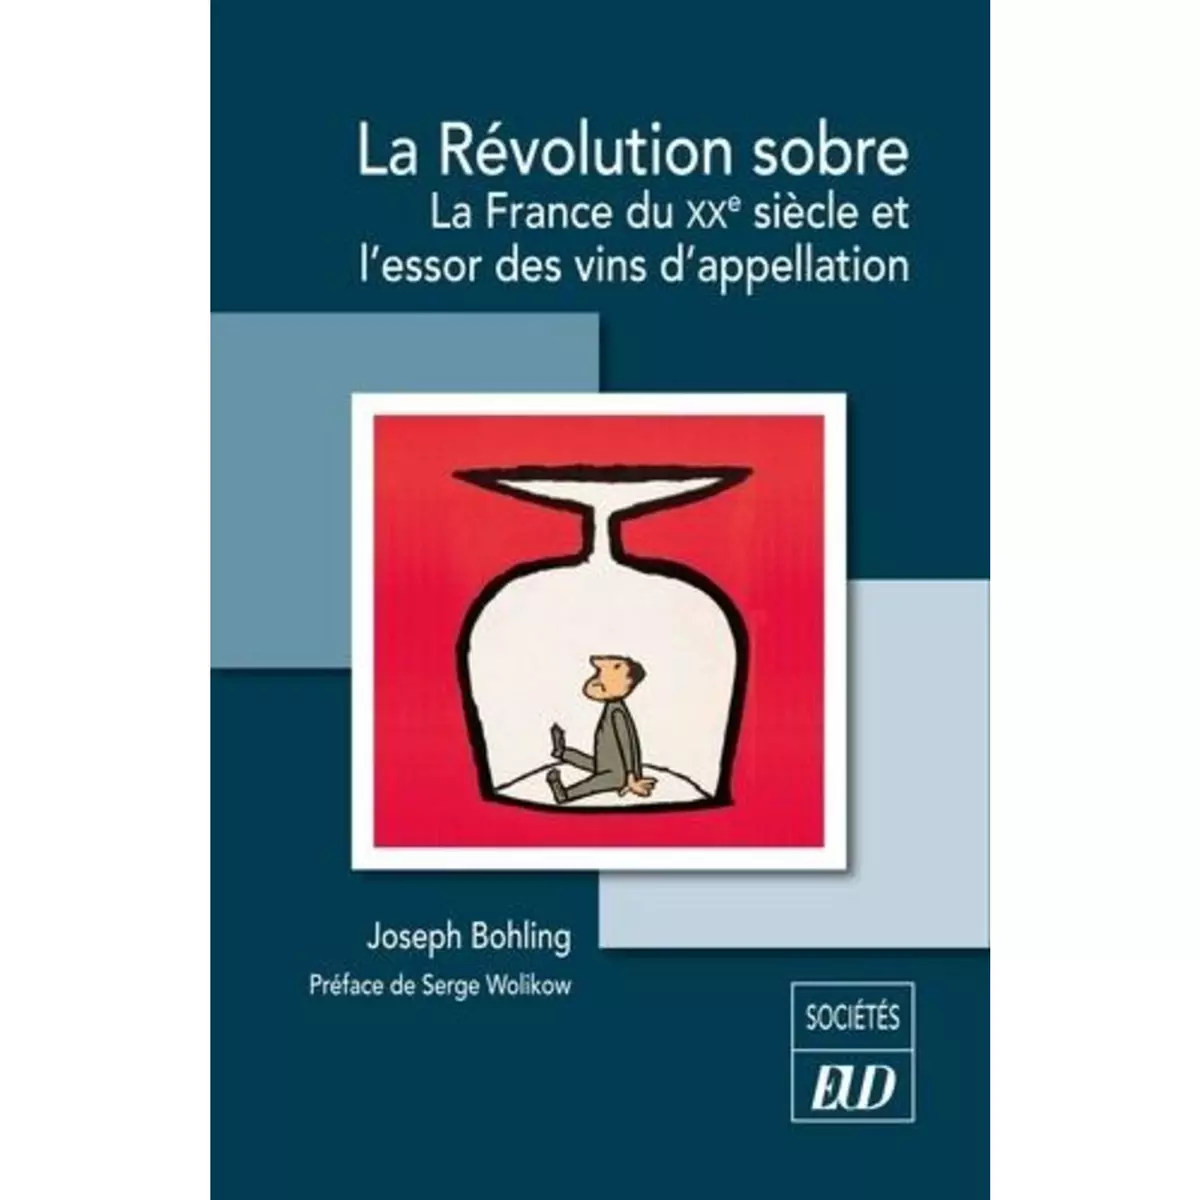  LA REVOLUTION SOBRE. LA FRANCE DU XXE SIECLE ET L'ESSOR DES VINS D'APPELLATION, Bohling Joseph